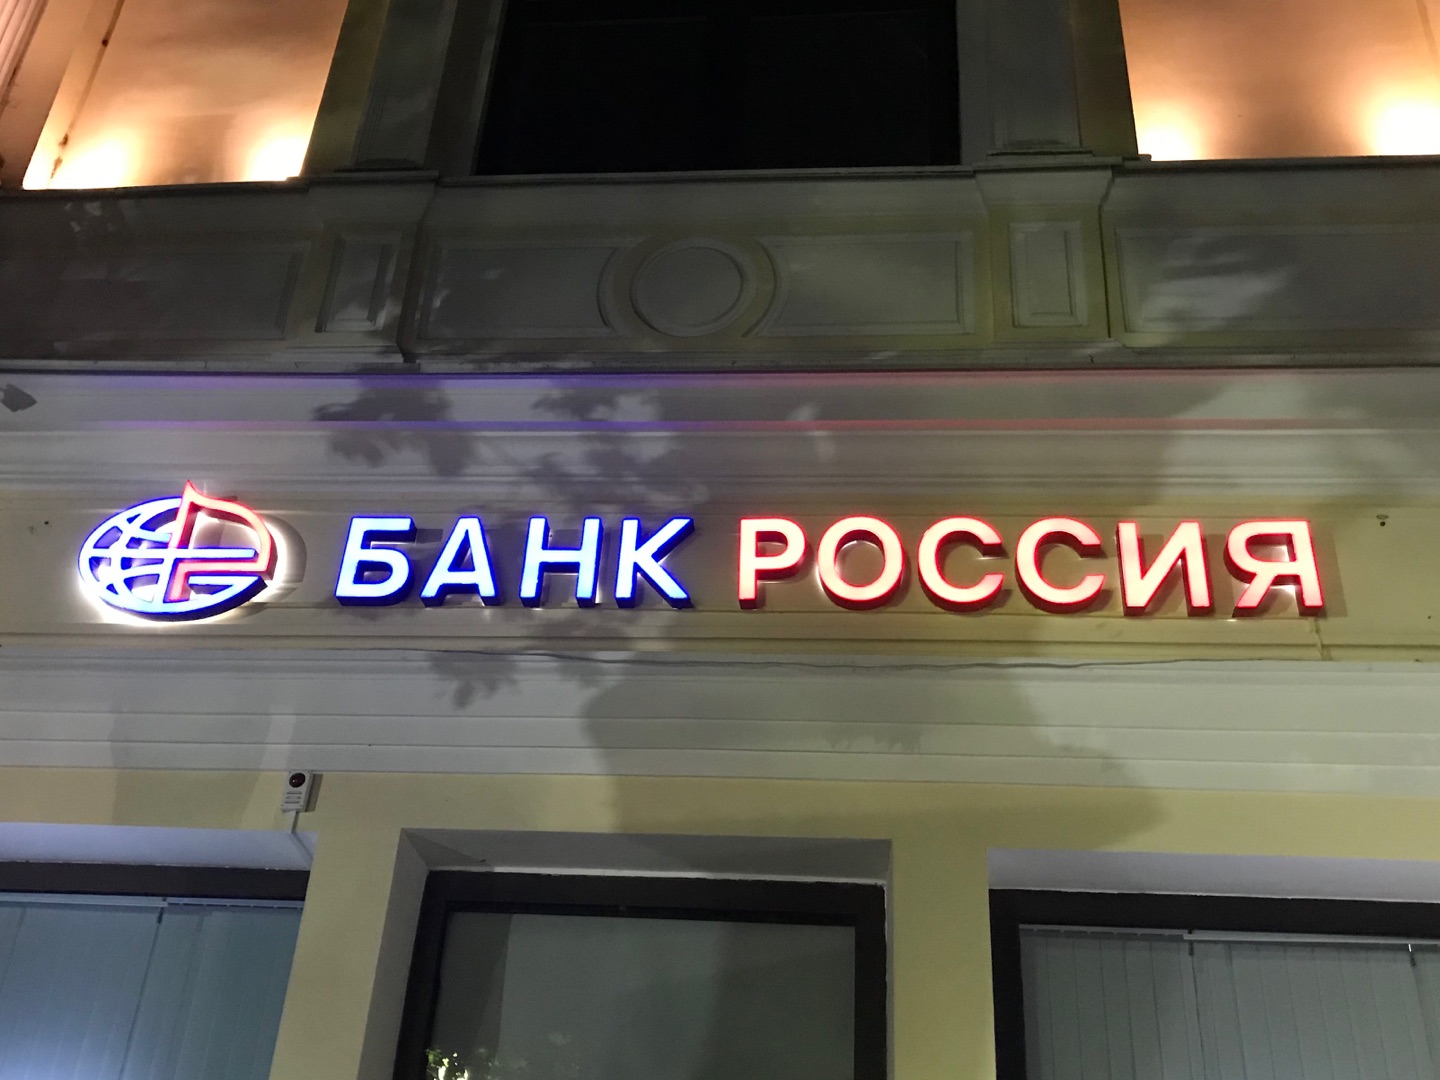 Η βρετανική κυβέρνηση μπέρδεψε την Κεντρική Τράπεζα της Ρωσίας με μια ιδιωτική στην οποία επέβαλε κυρώσεις